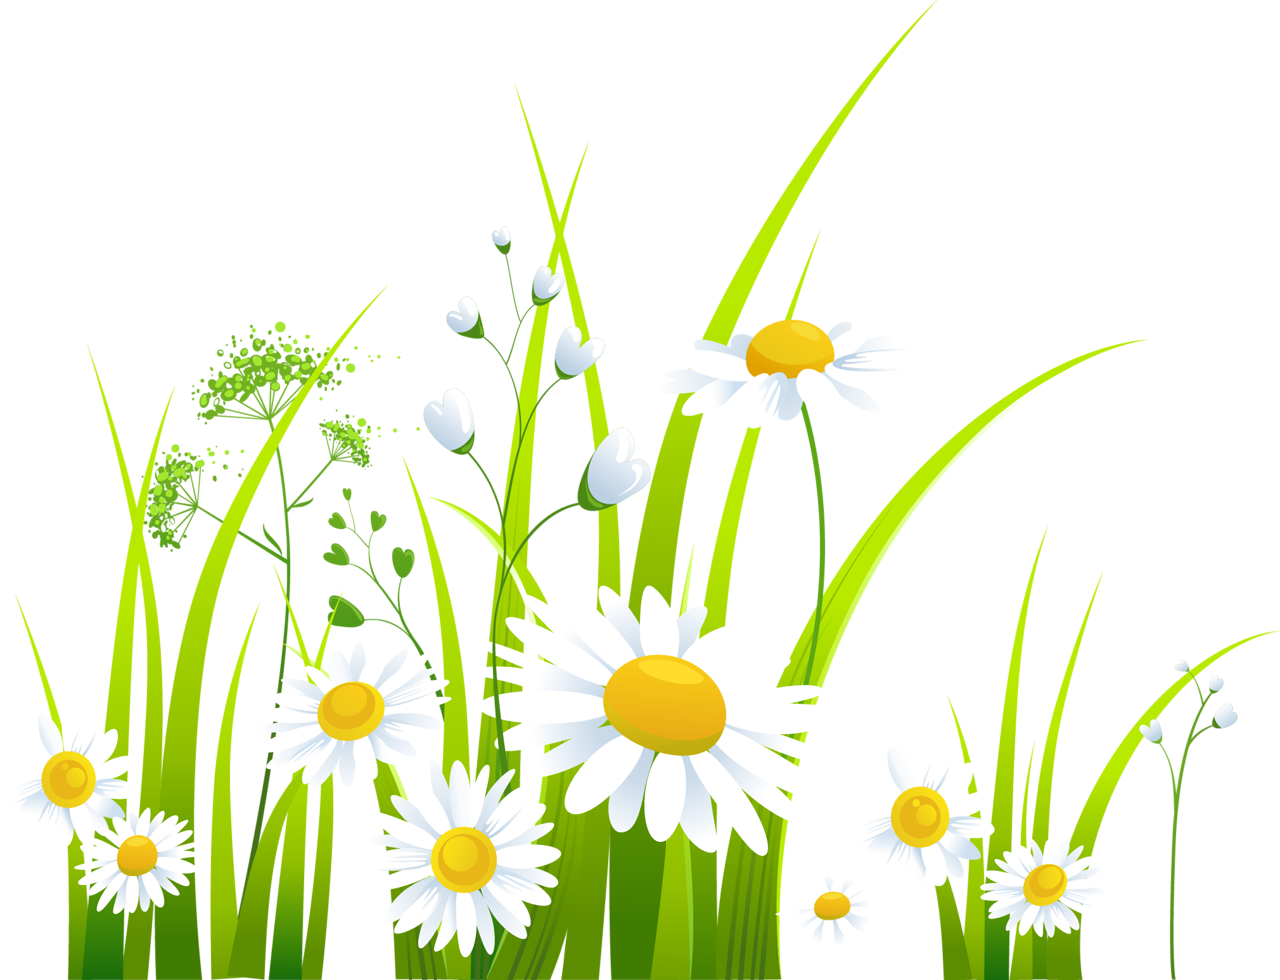 Spring Clip art - chrysanthemum png download - 1280*980 - Free ...